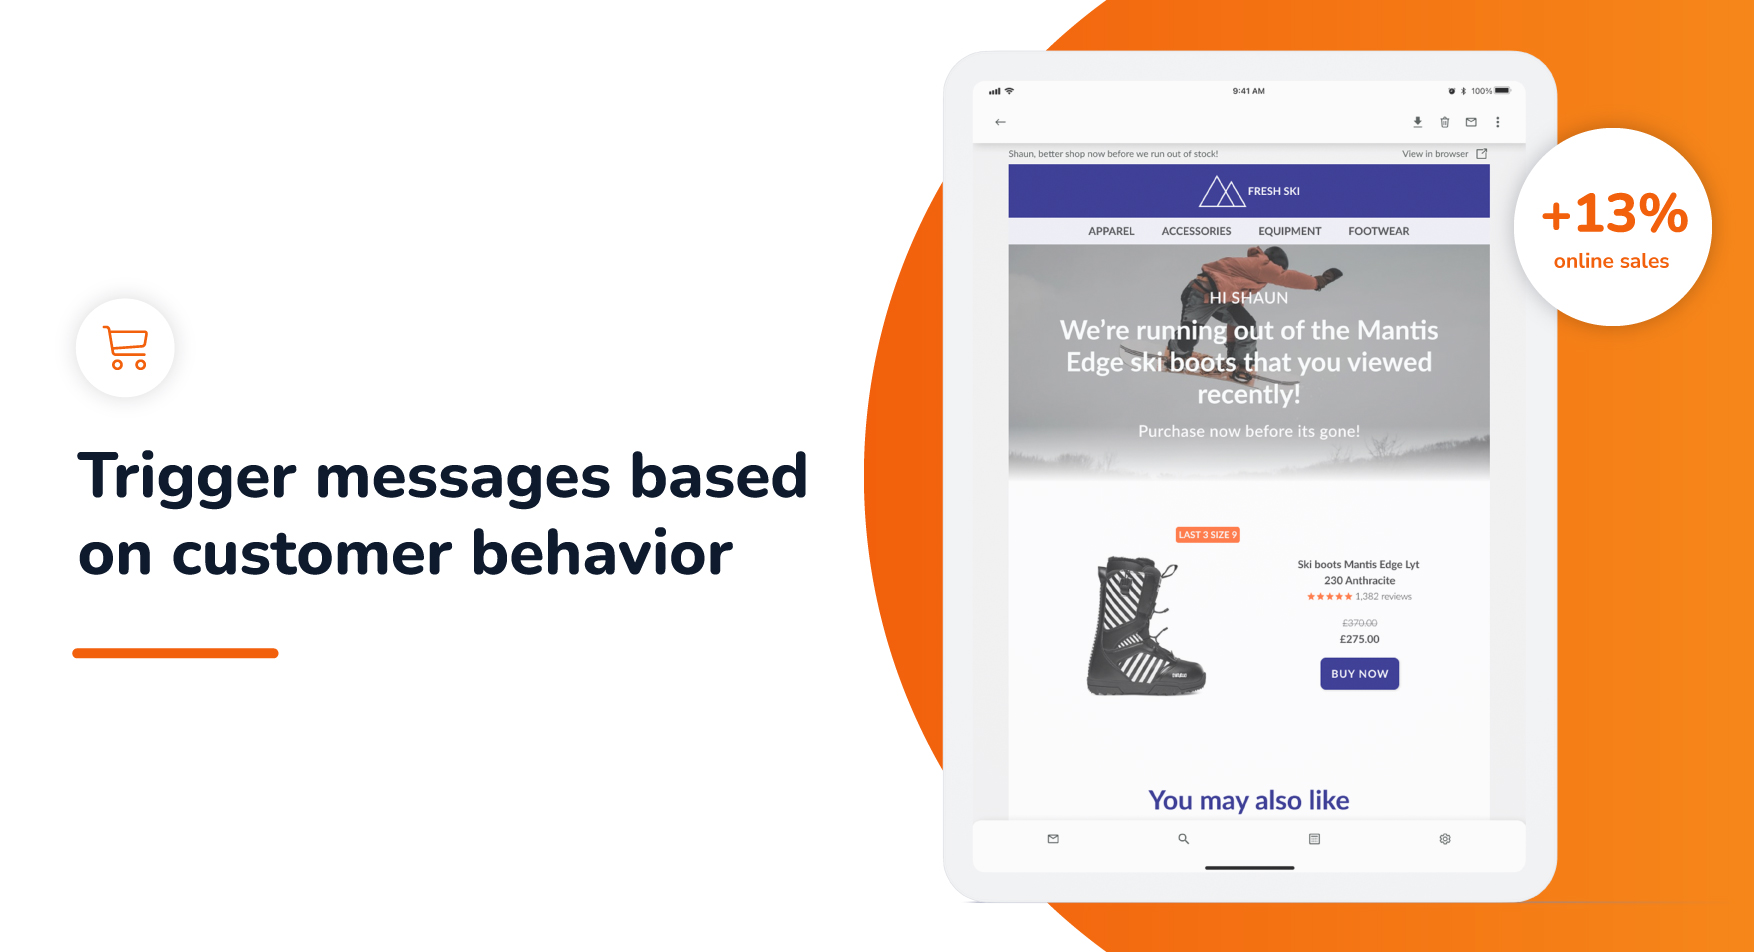 Trigger messages based on customer behavior